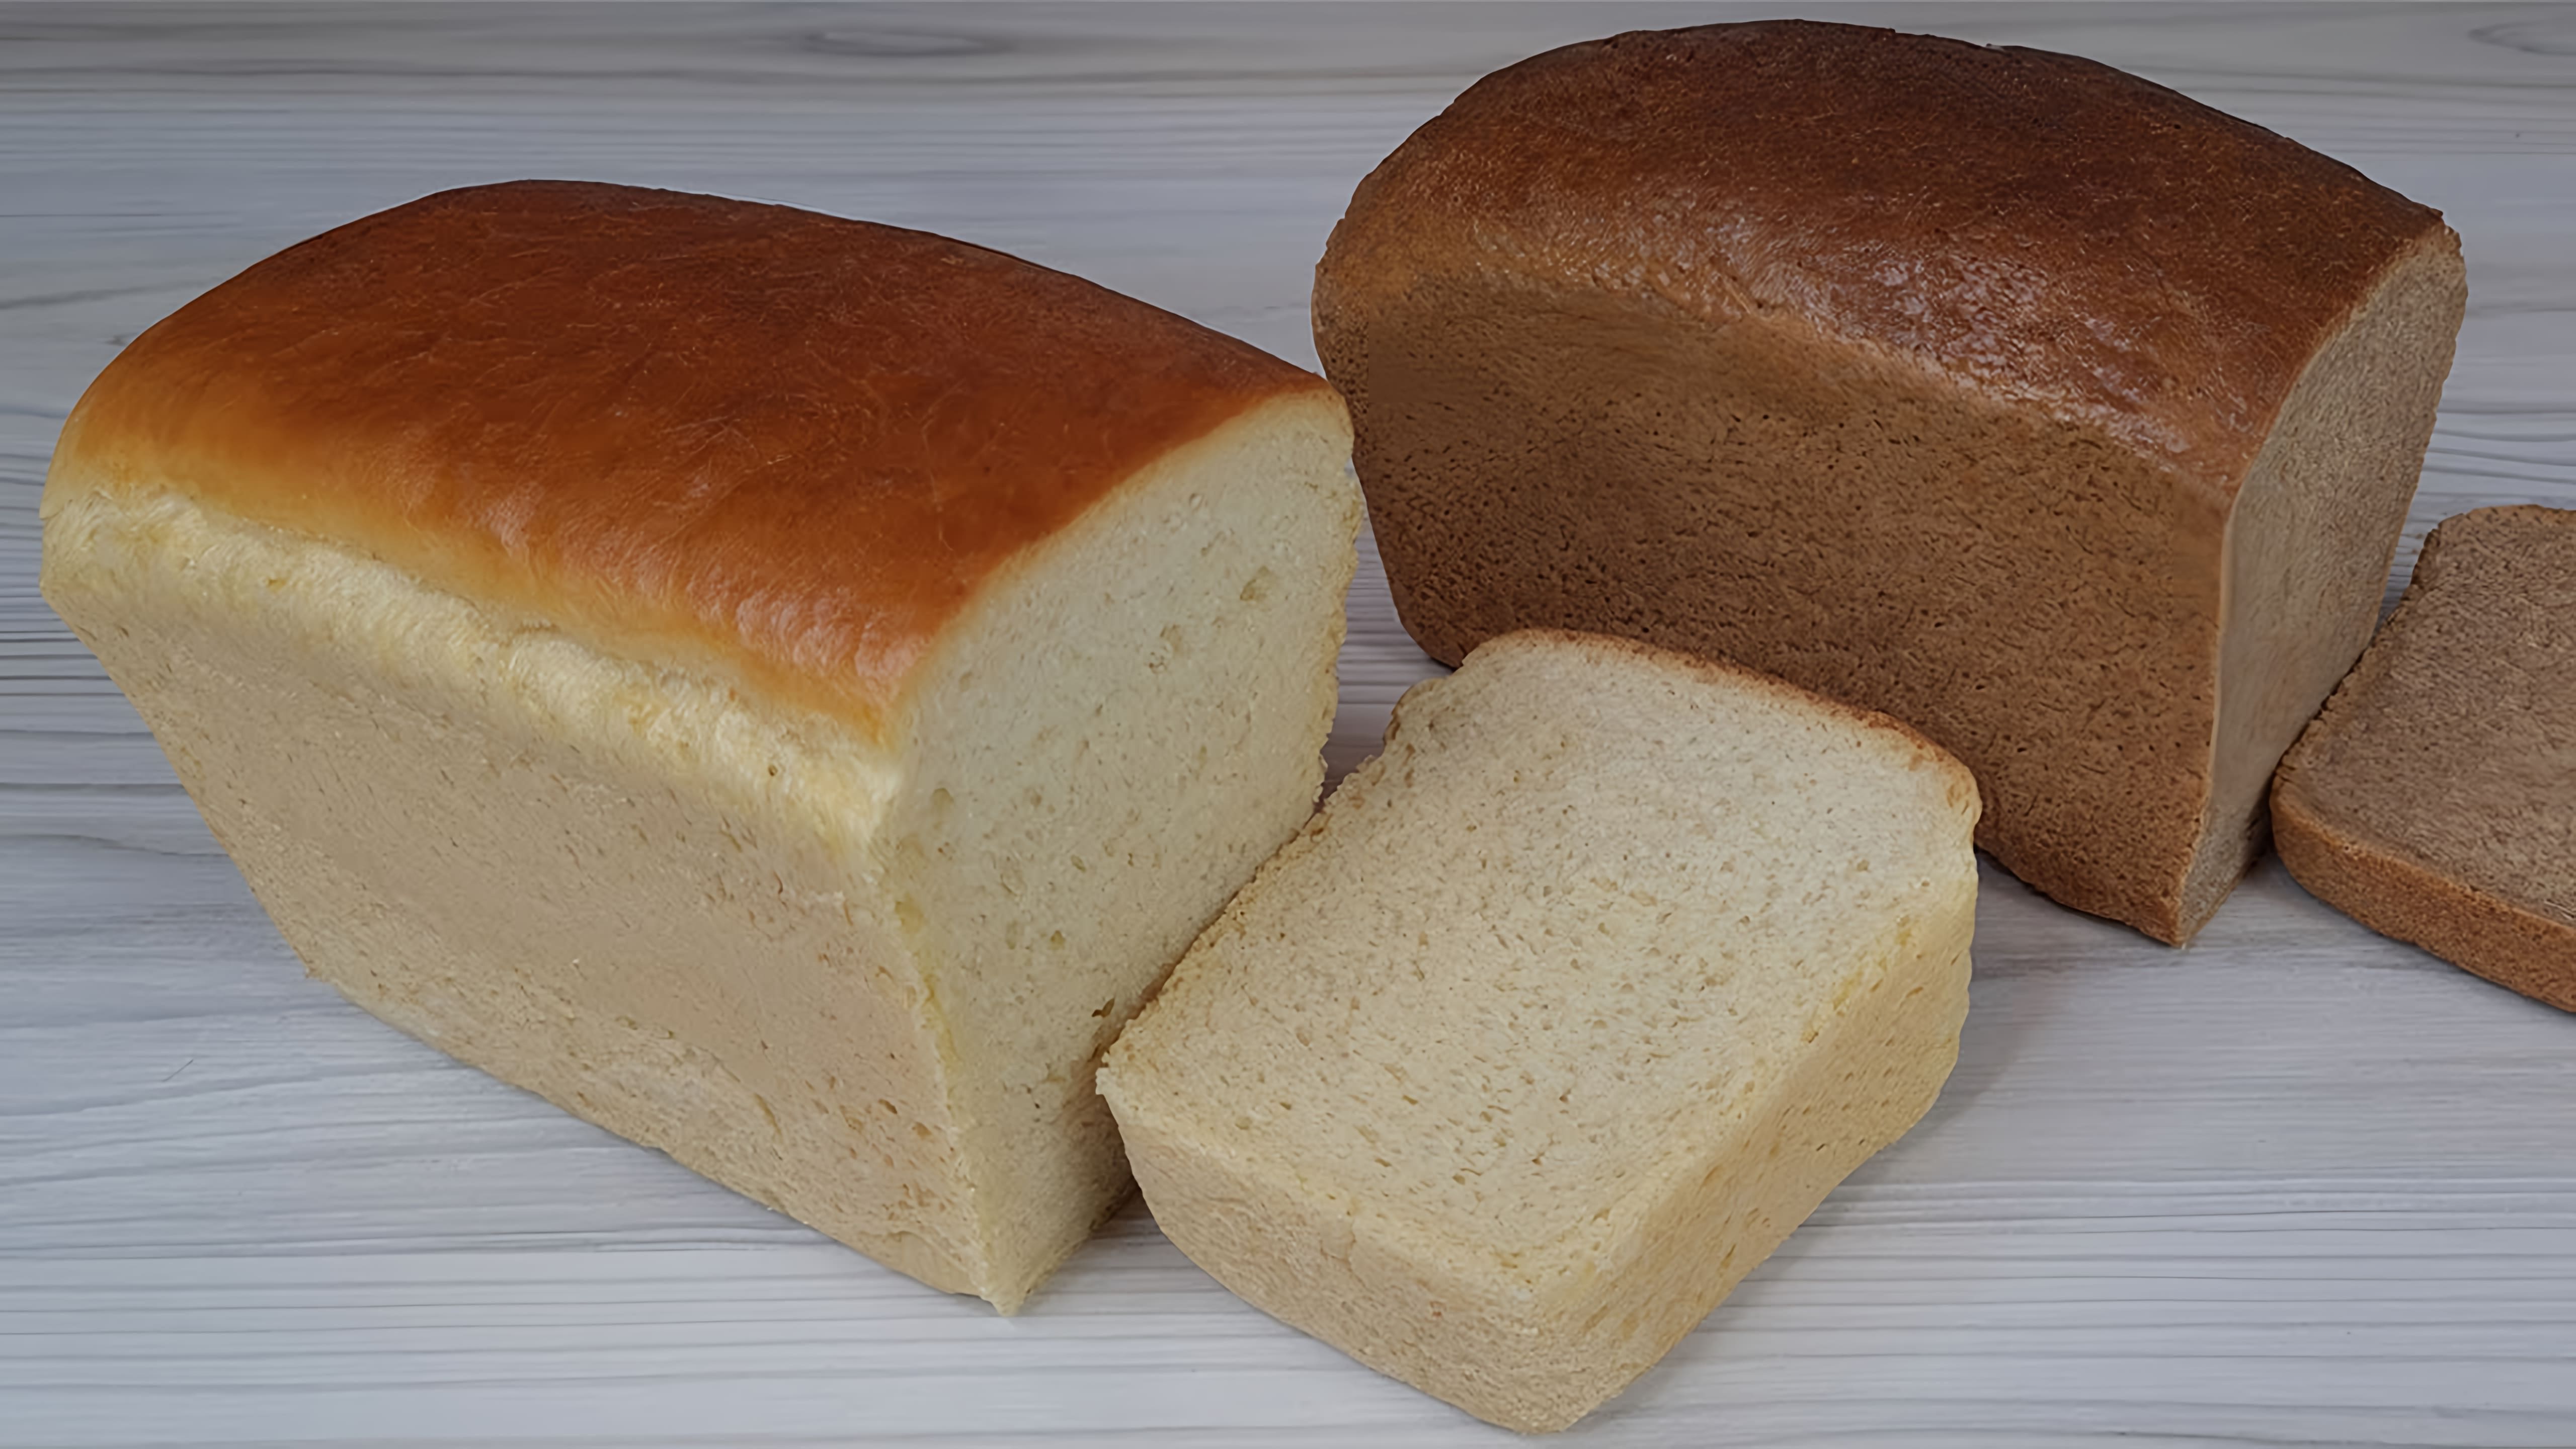 В этом видео демонстрируется процесс приготовления двух видов хлеба: пшеничного и ржаного